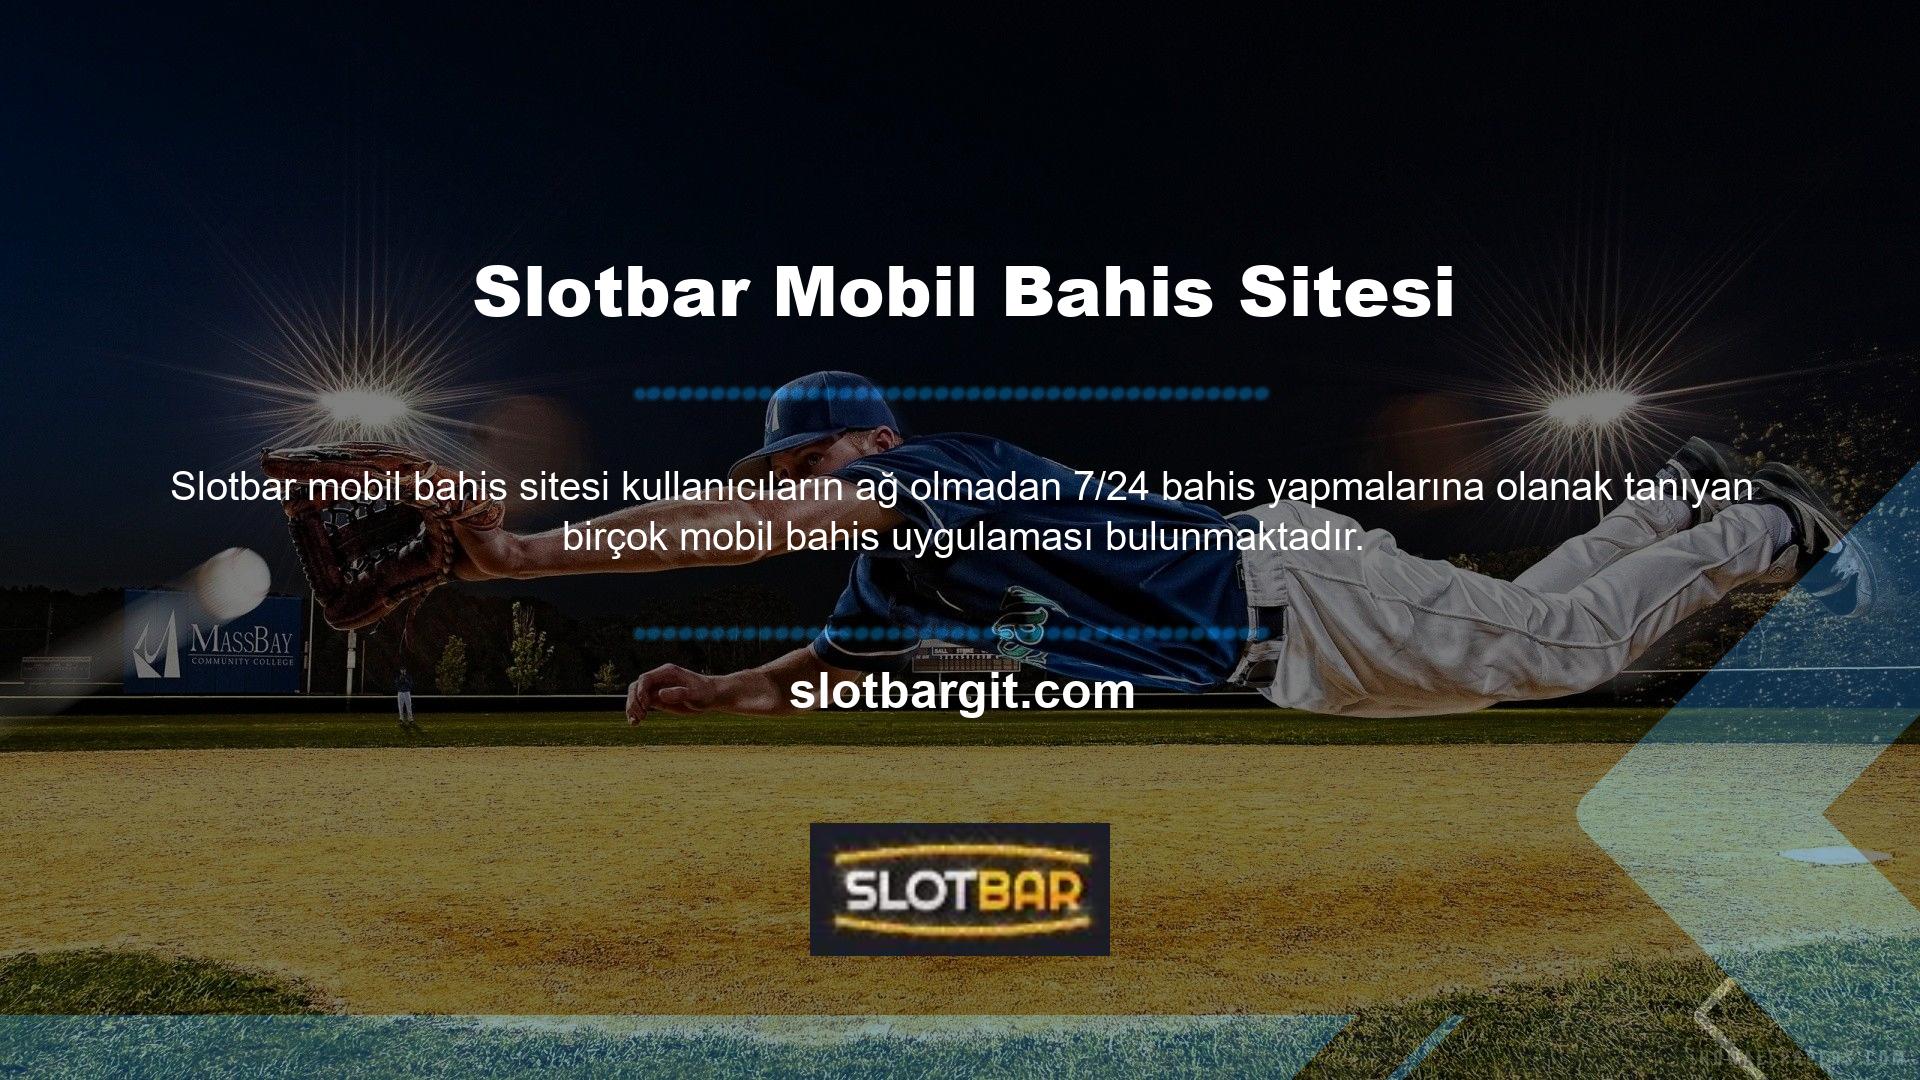 Slotbar mobil bahis sitesi Mobile en etkili programlardan biridir